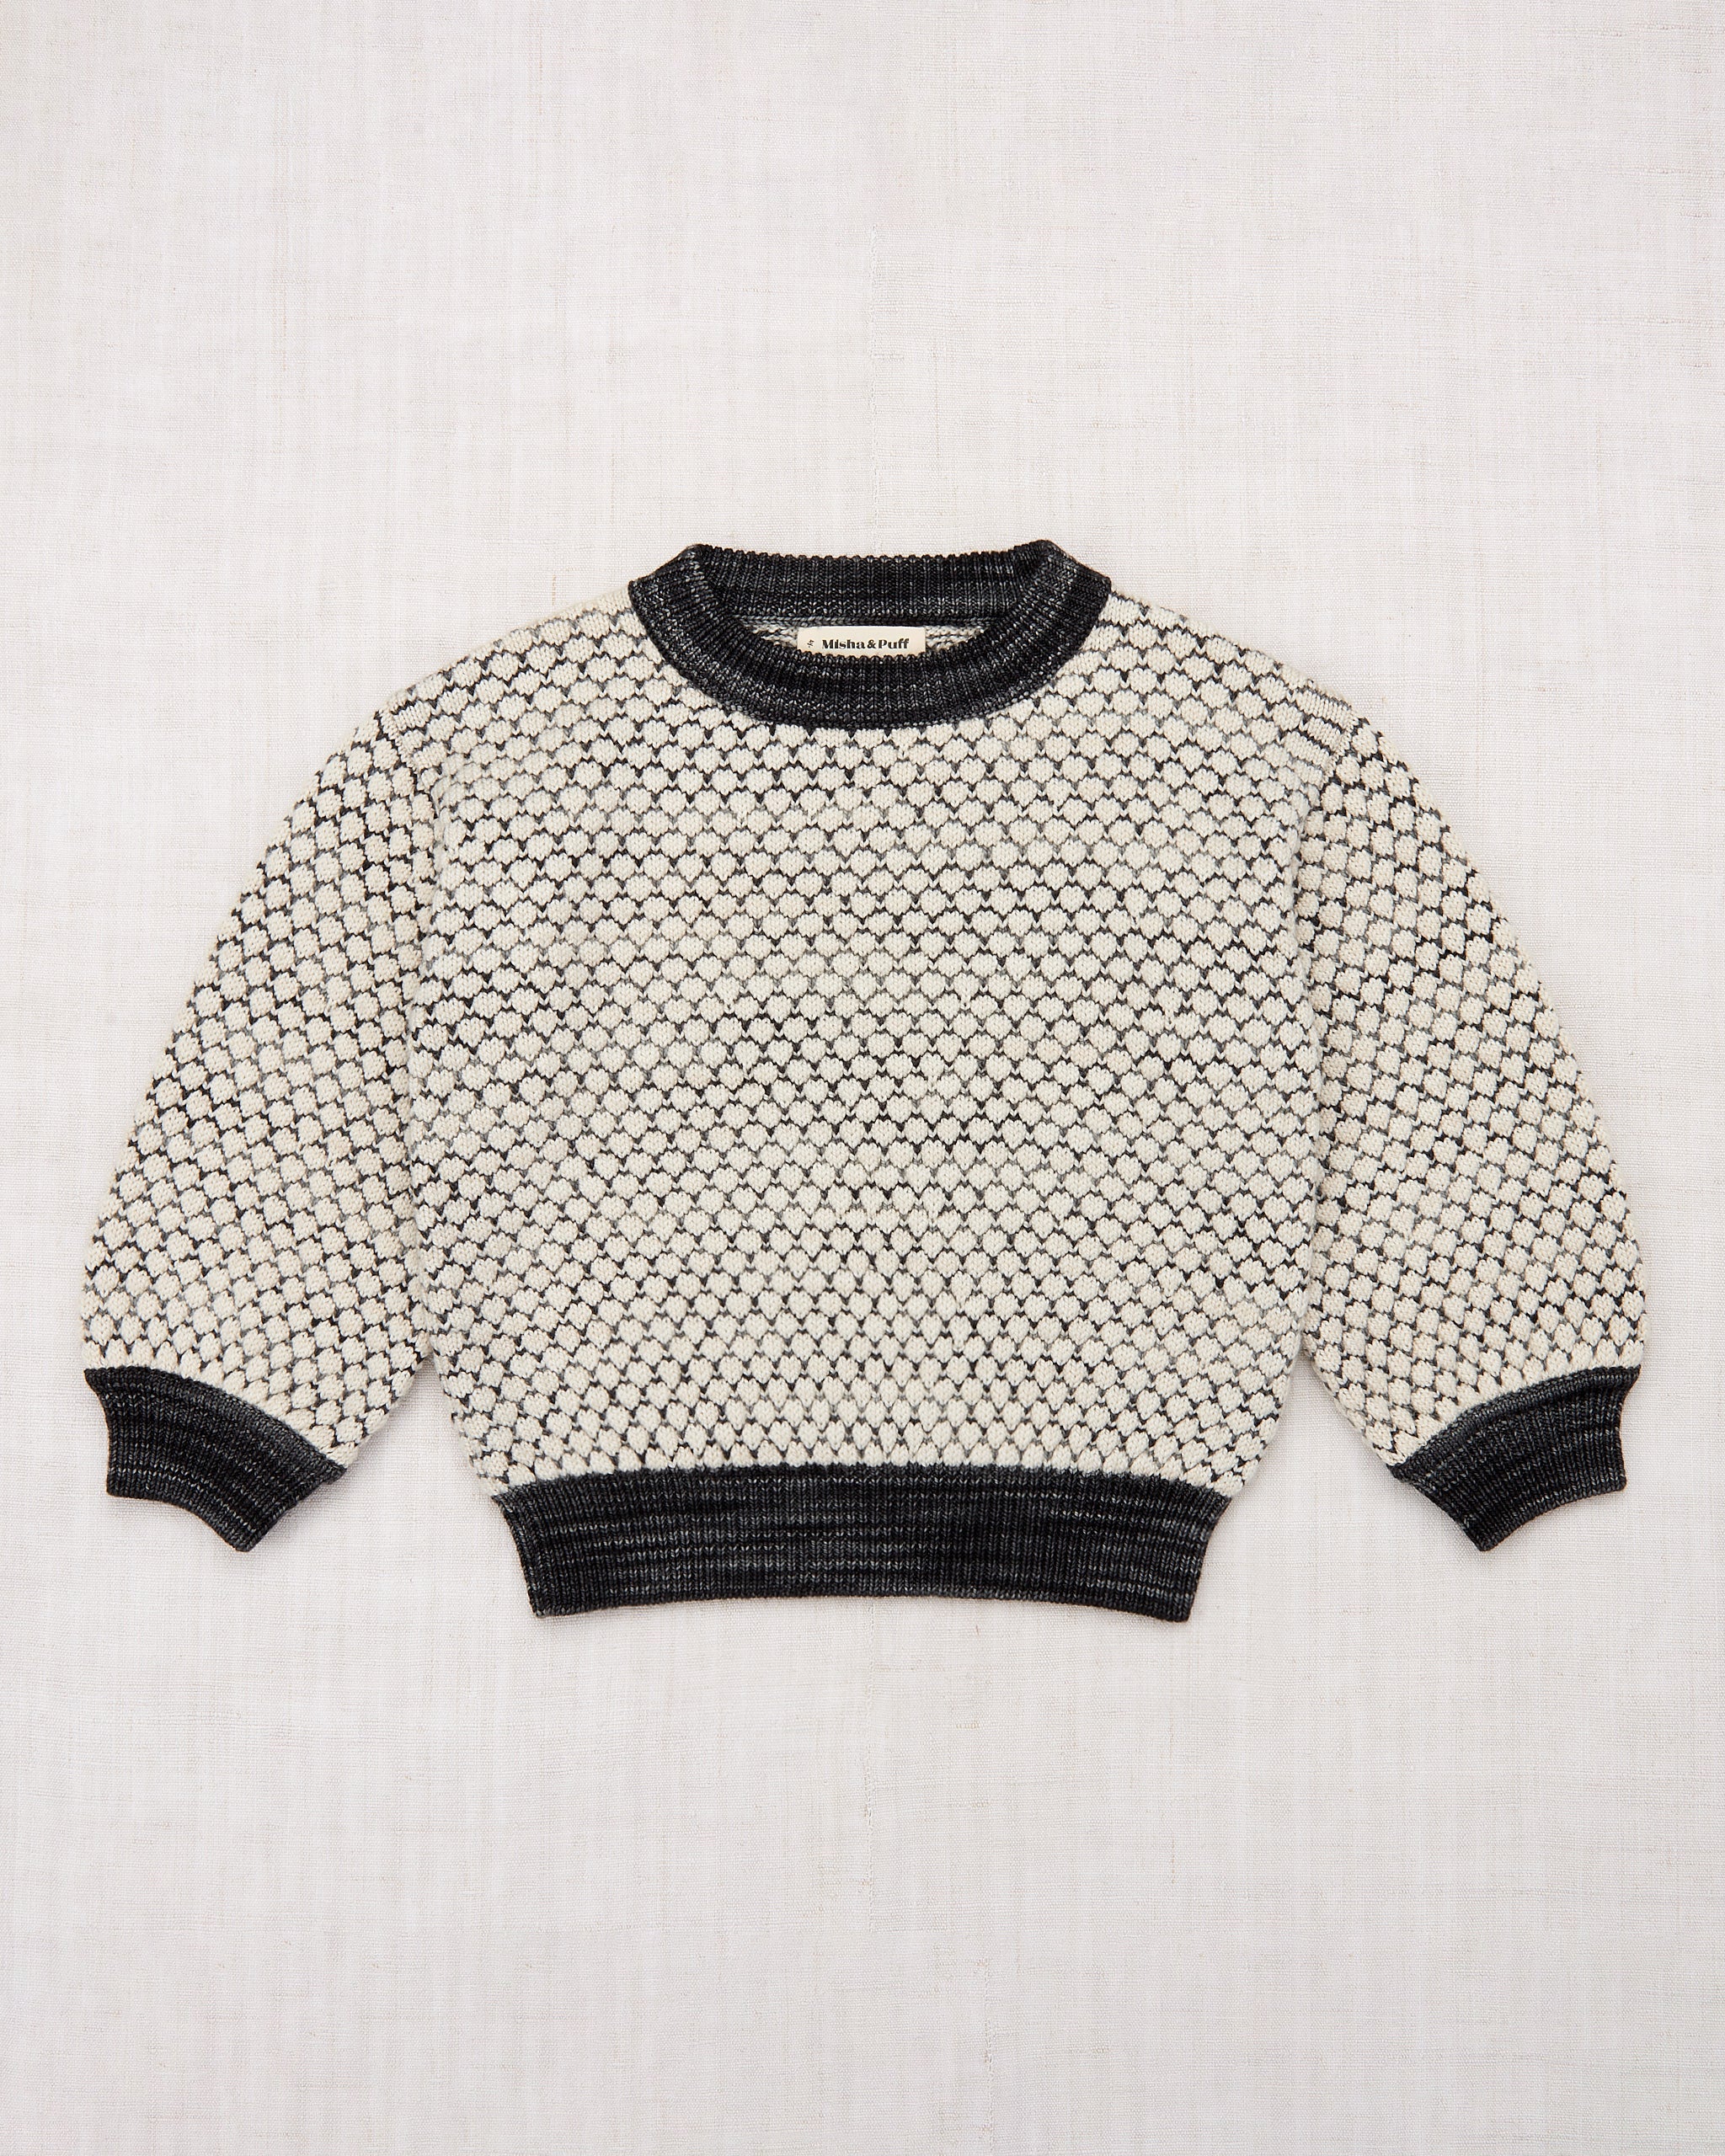 Cobblestone Sweater